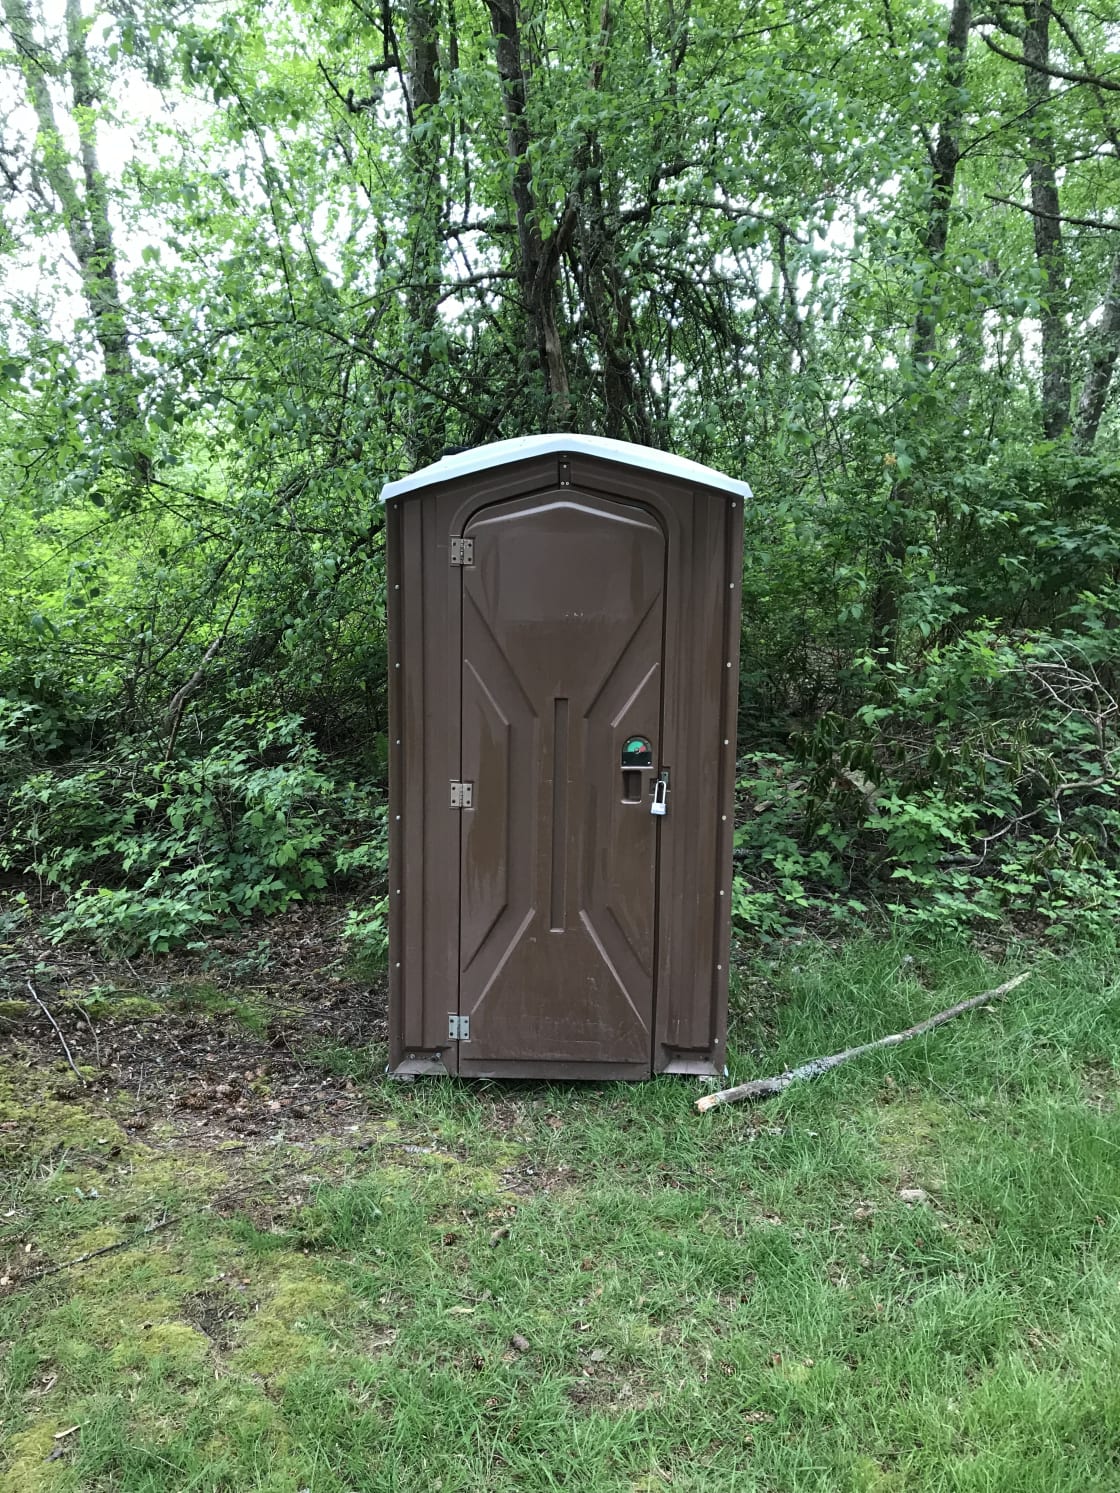 Porta potty on site